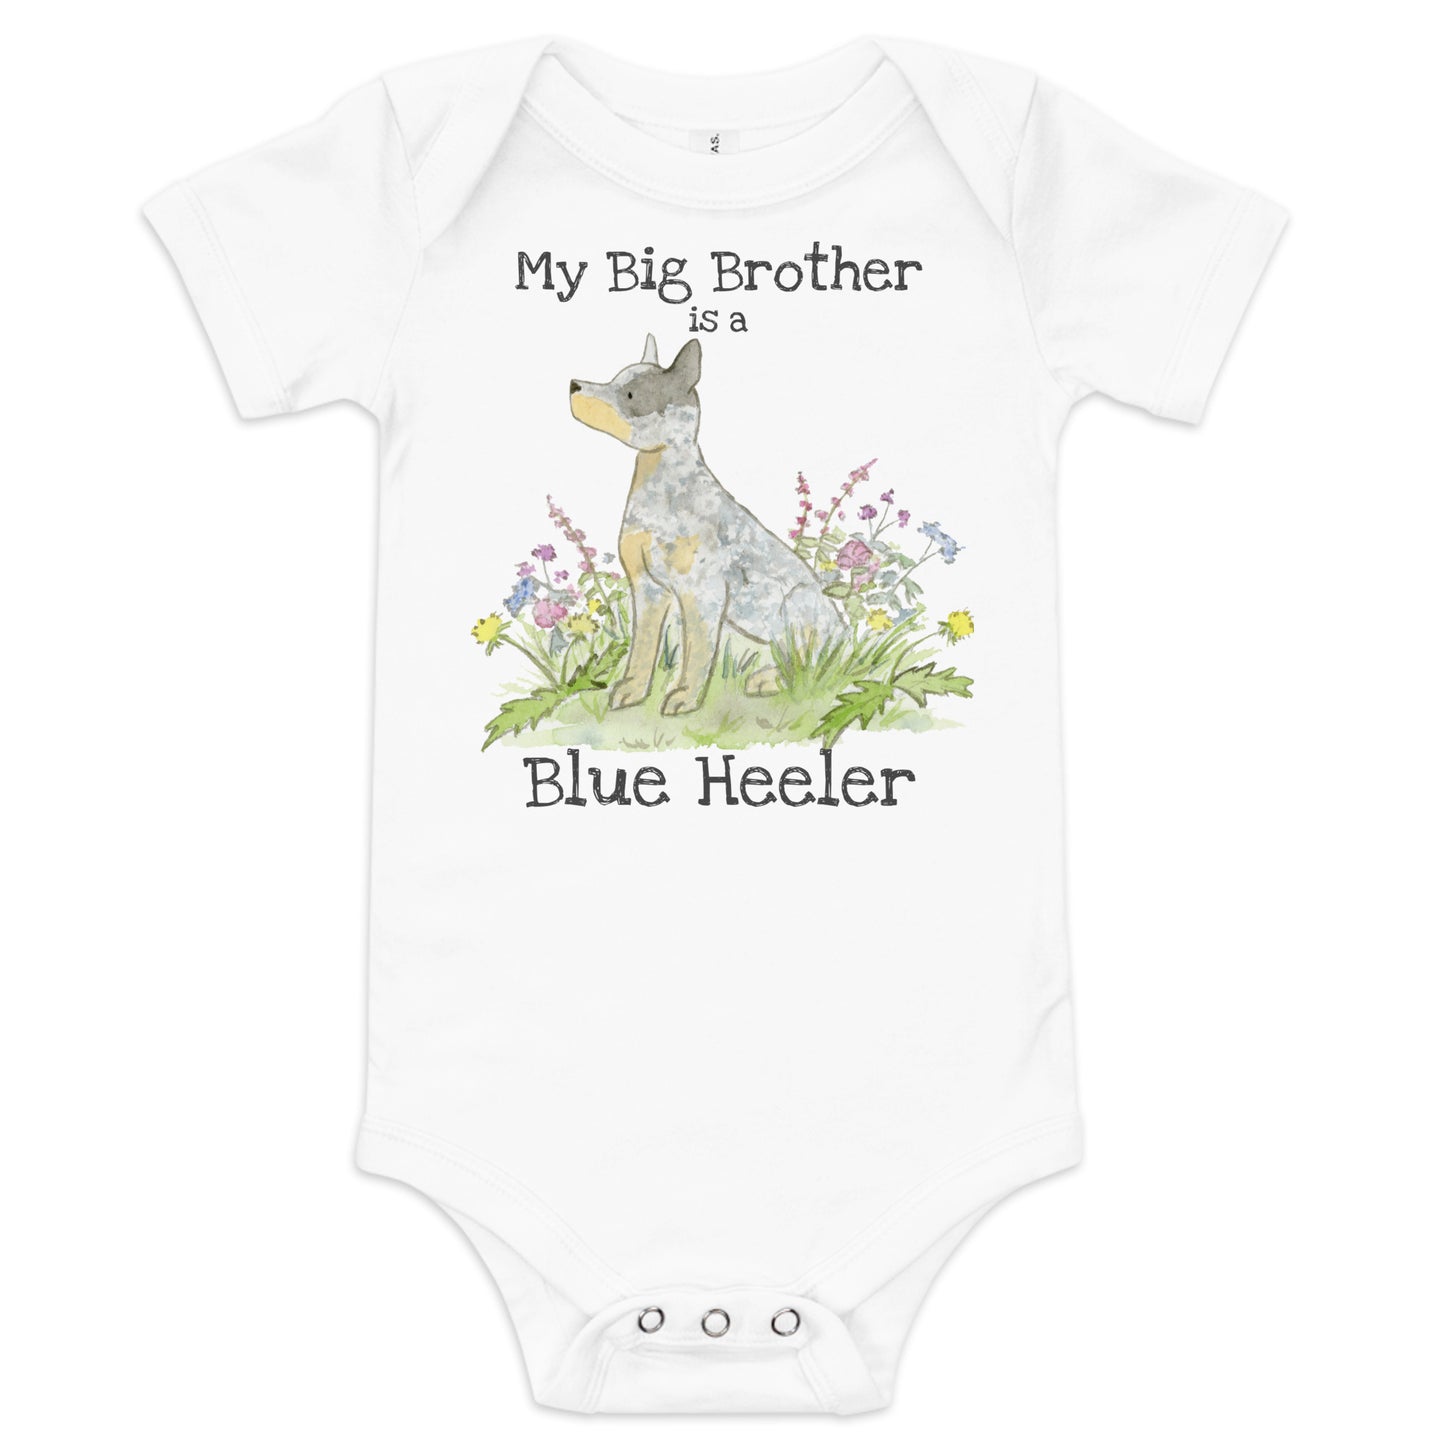 Blue Heeler Onesie 3-6 months